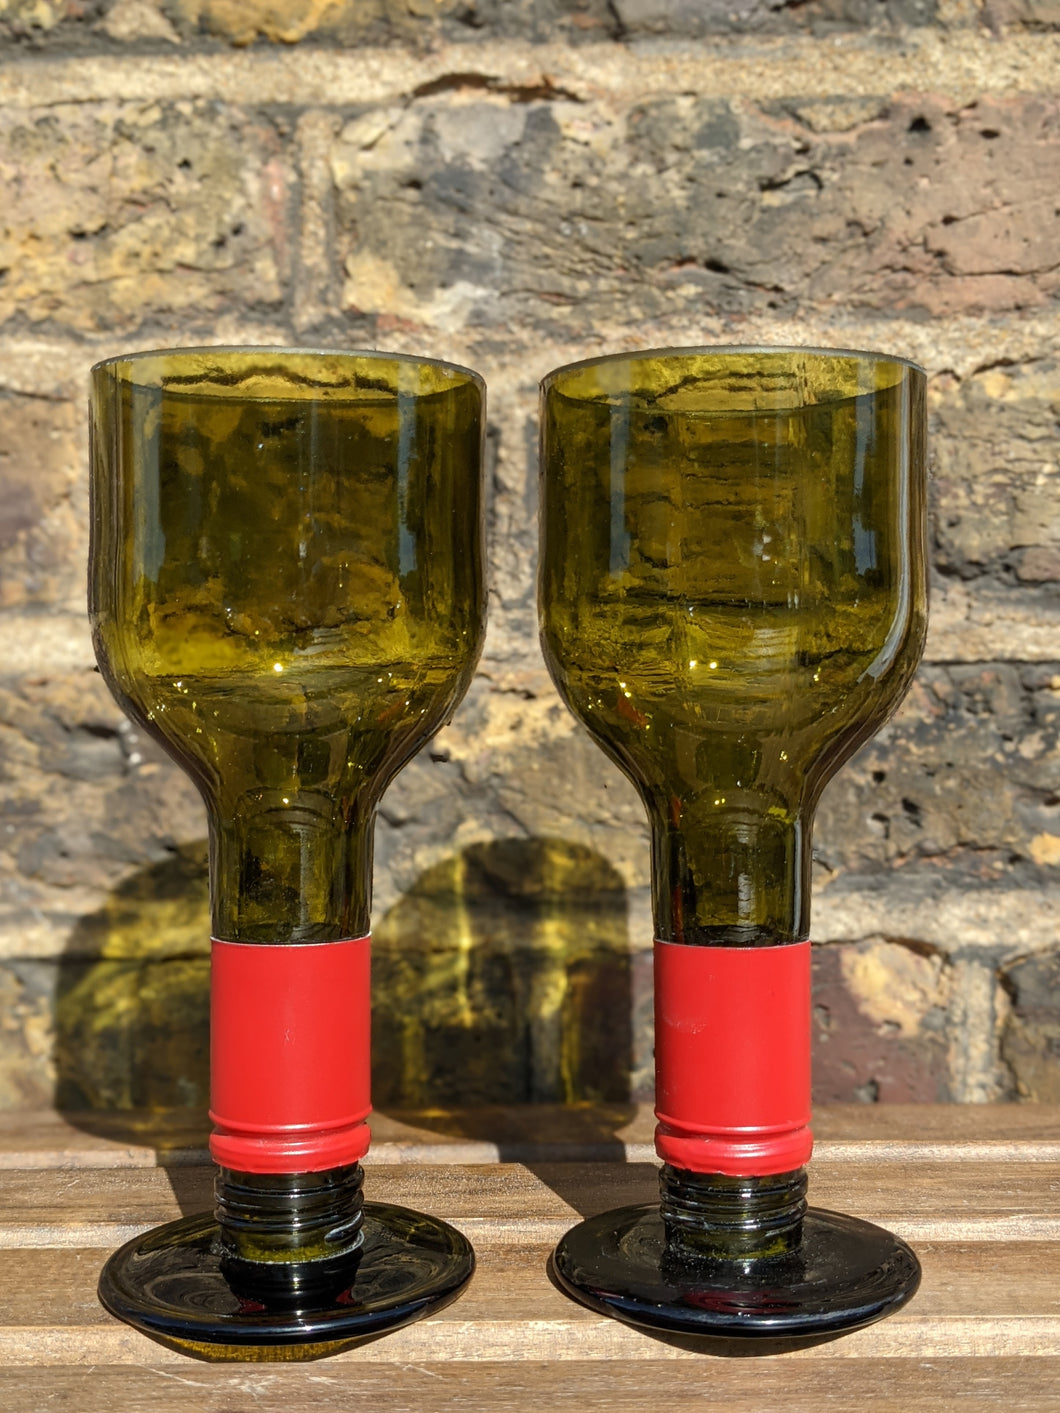 Wine bottle glasses